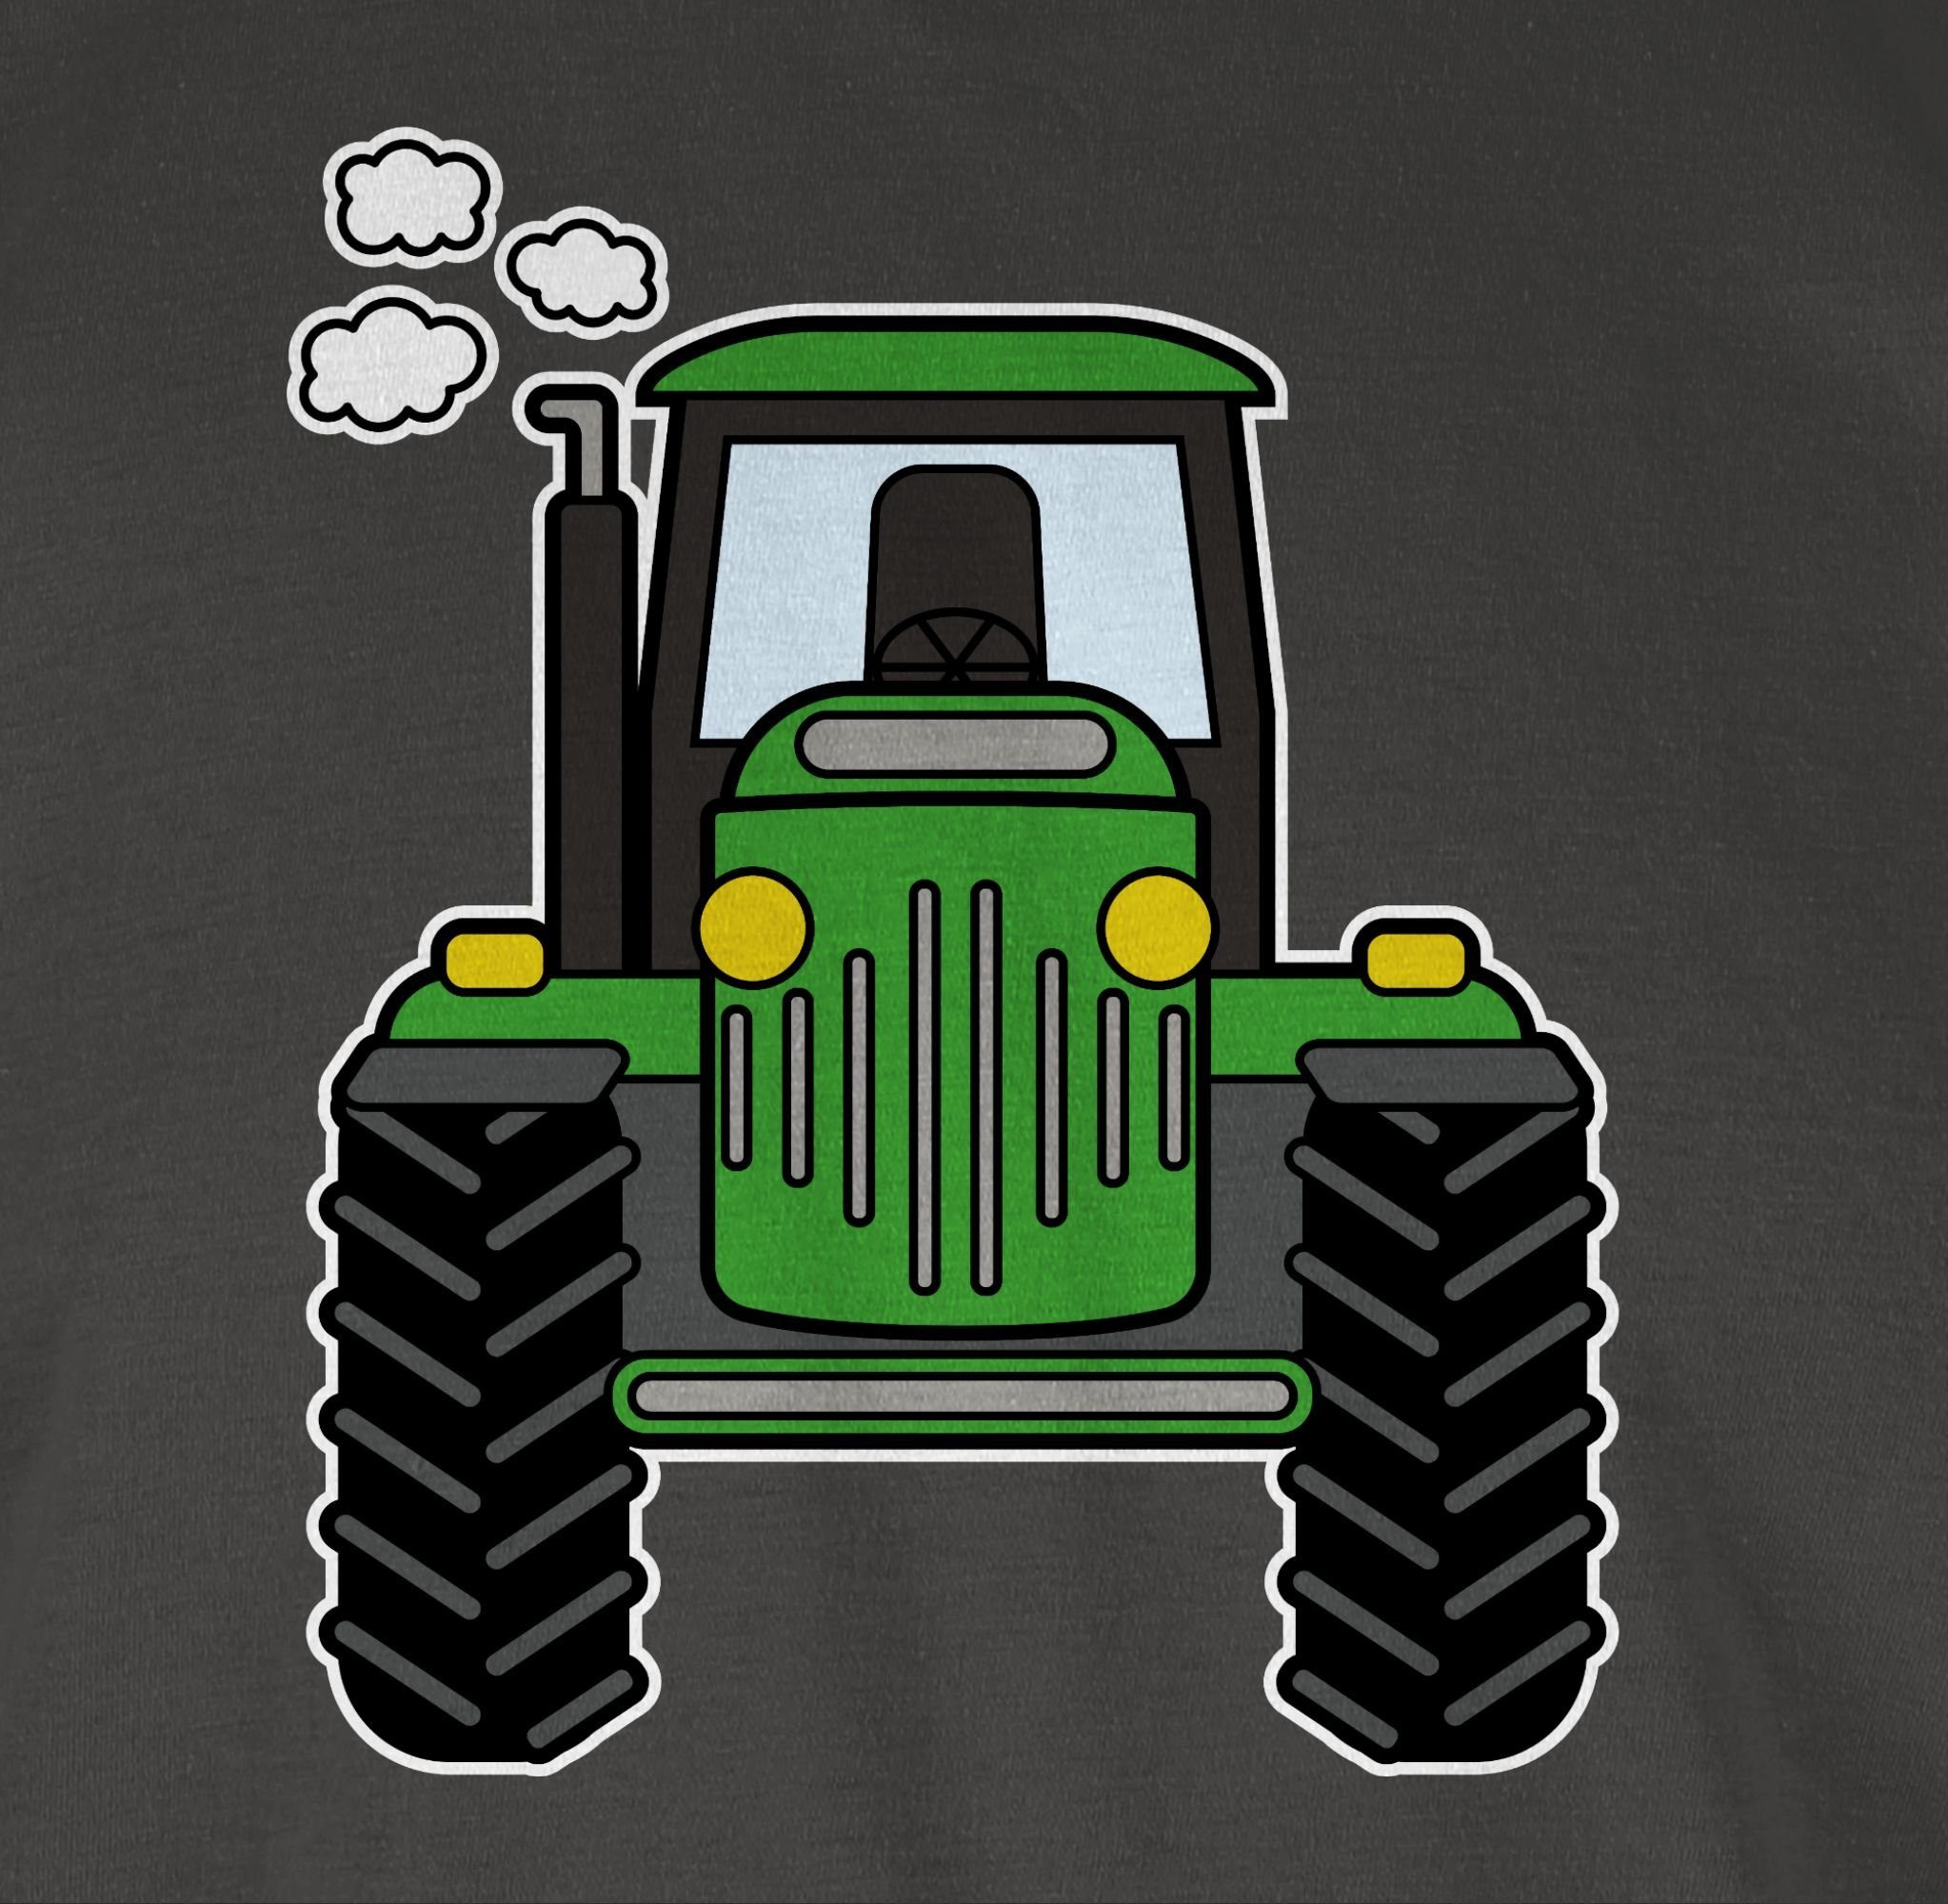 Shirtracer T-Shirt Traktor 03 Geschenk Trecker Bauern Traktor Bulldog Landwirtschaft Landwirte Dunkelgrau